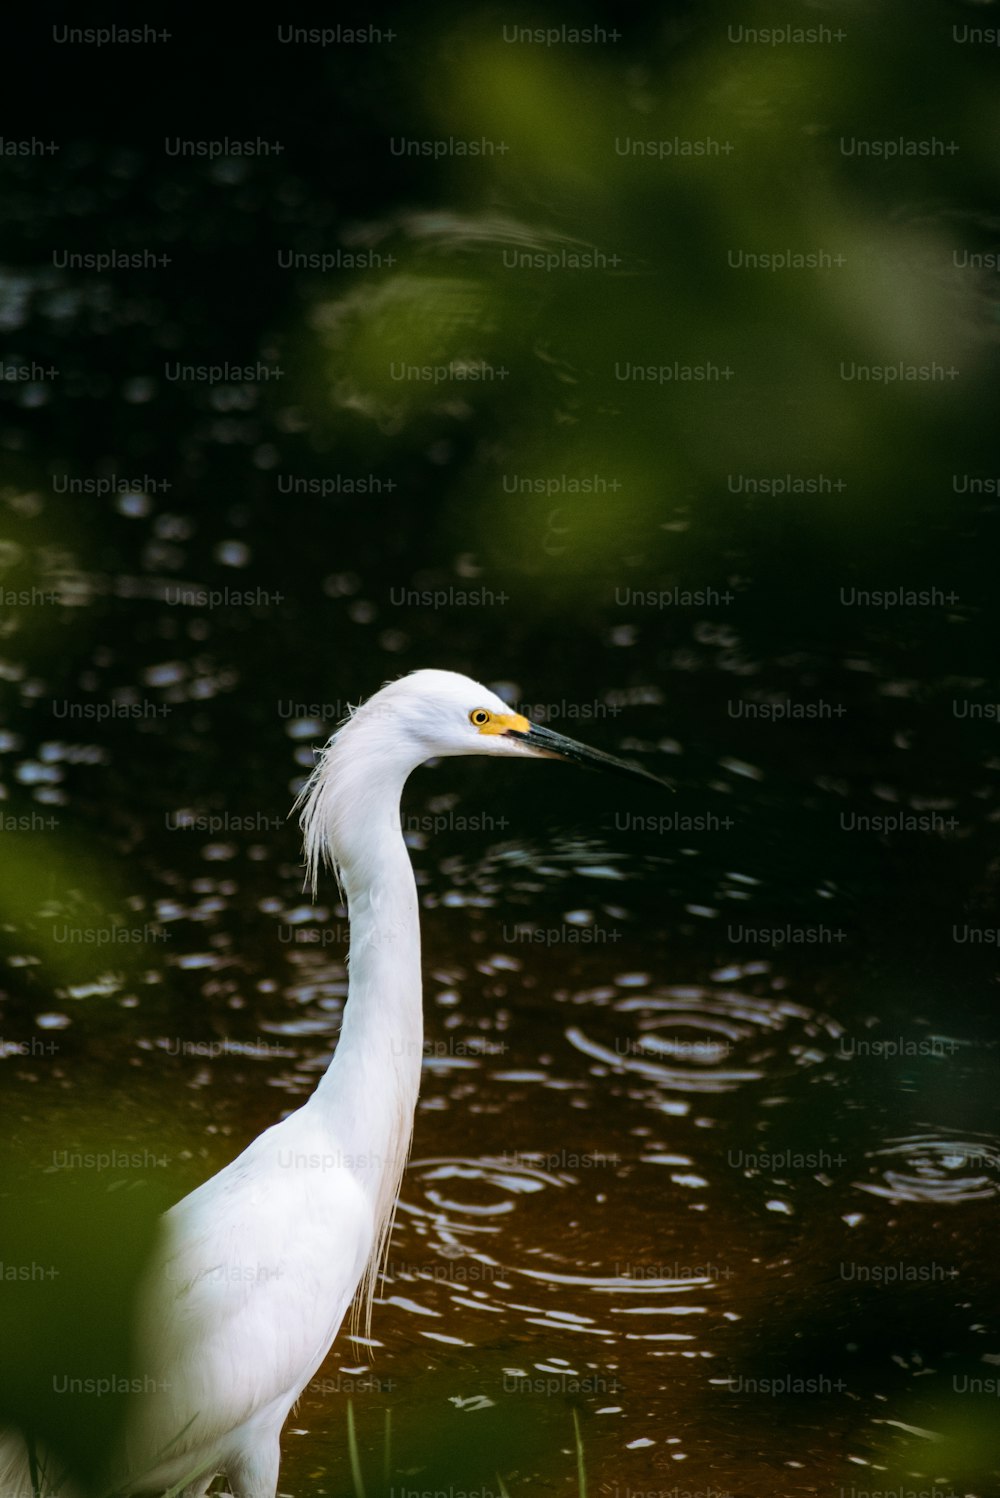 Un oiseau blanc se tient dans l’eau